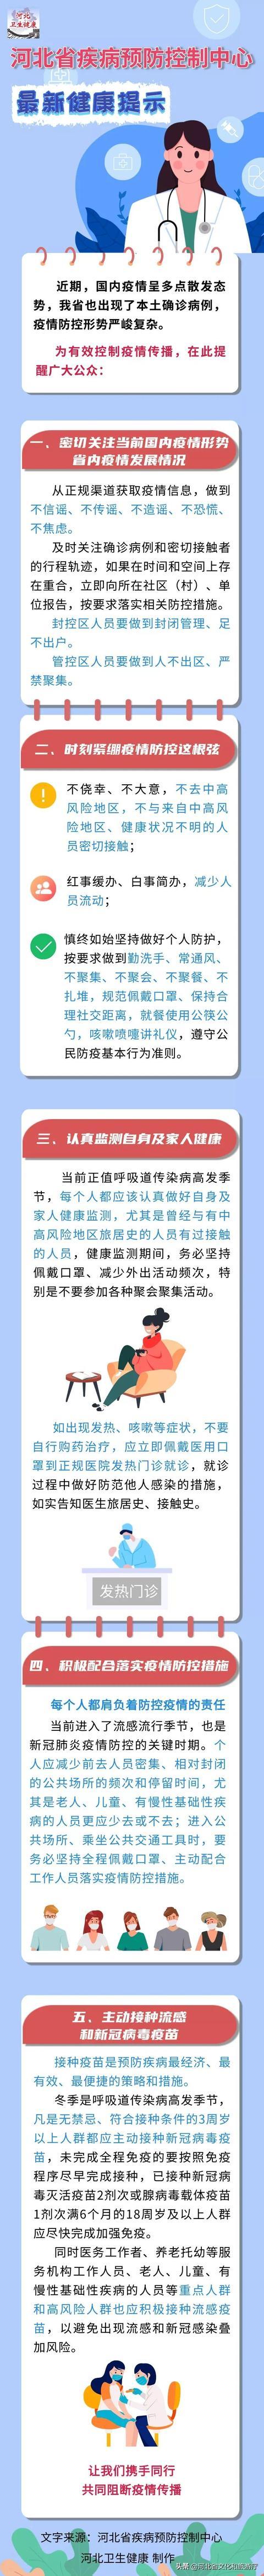 河北省疾病预防控制中心健康提示